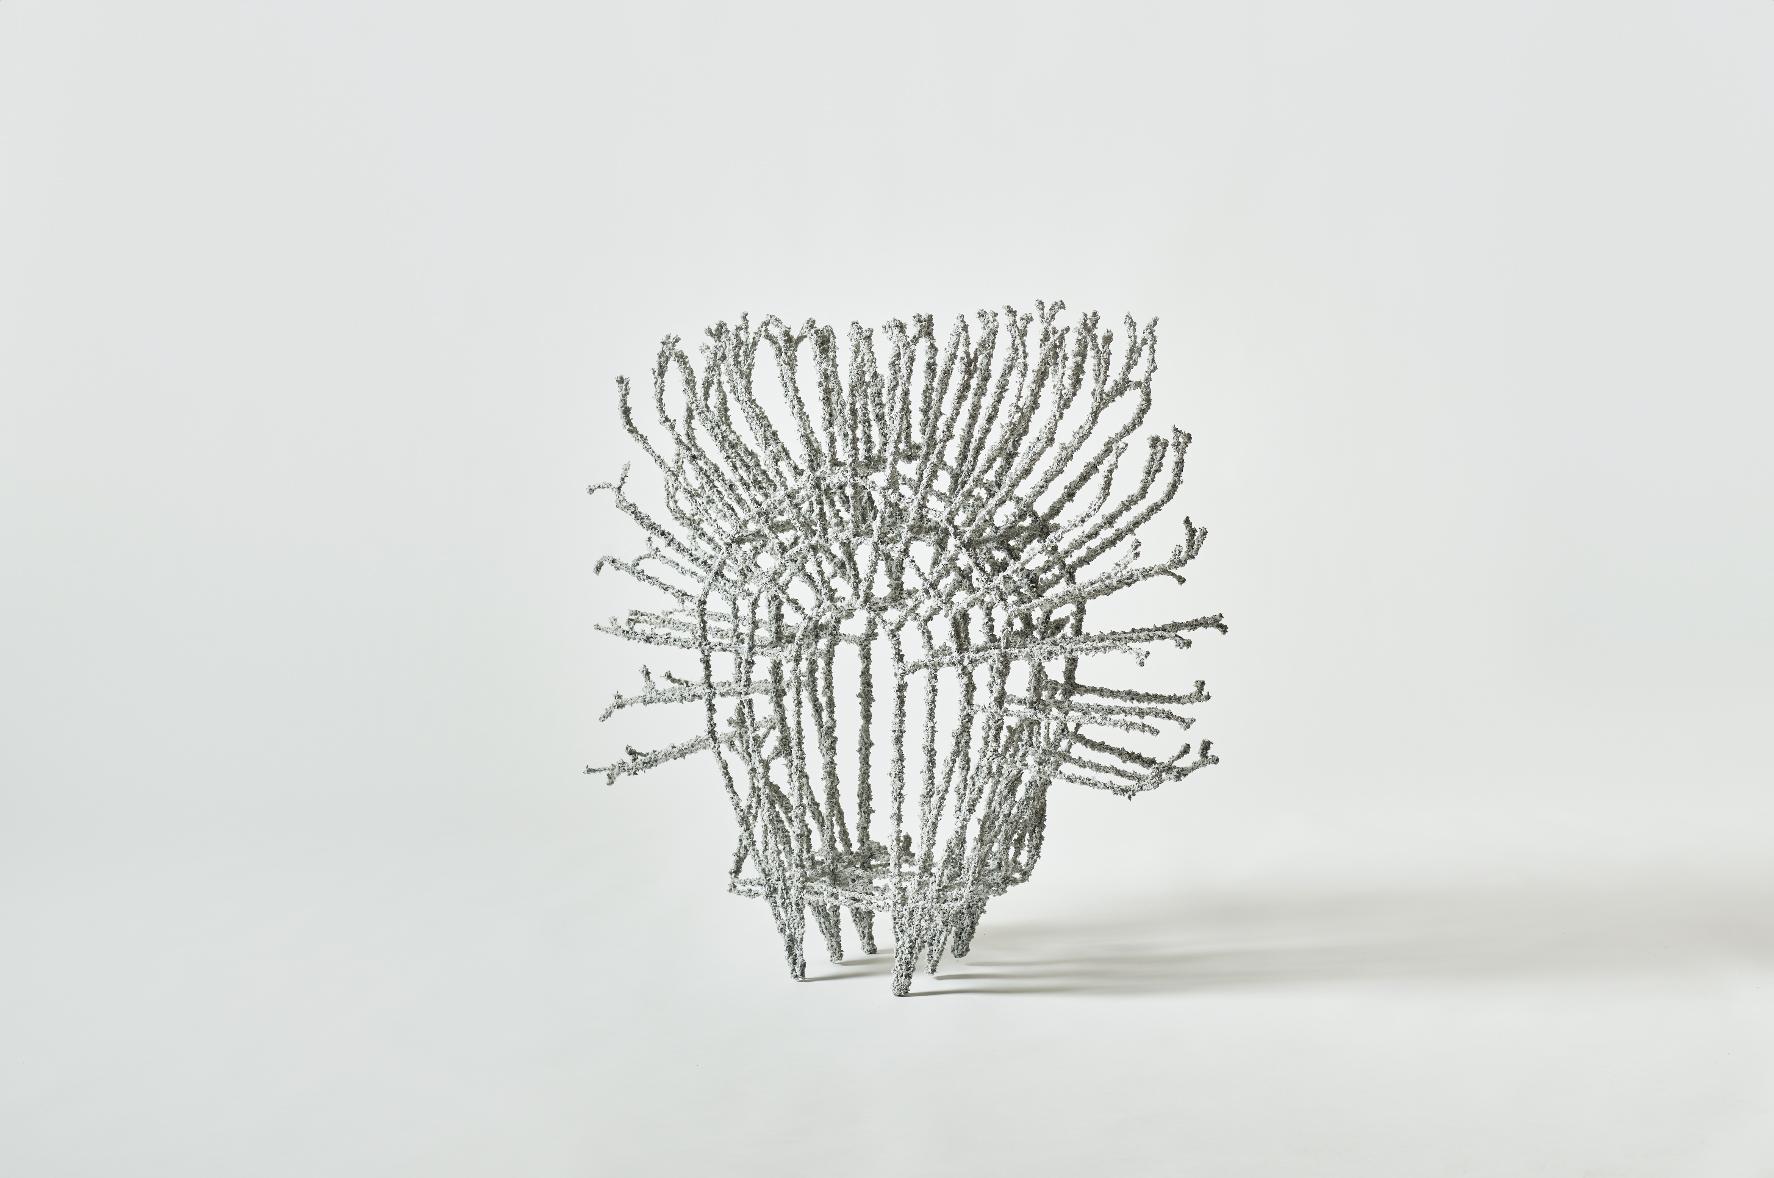 RAE Sculpture en béton de Fransje Gimbrere
Sculpture 3D tissée à suspendre/à poser
Dimensions : L 70 x L 70 x P 25 cm
Matériaux : Fibre de verre, papier recyclé, colle biodégradable

Fransje Gimbrère est une designer et directrice artistique